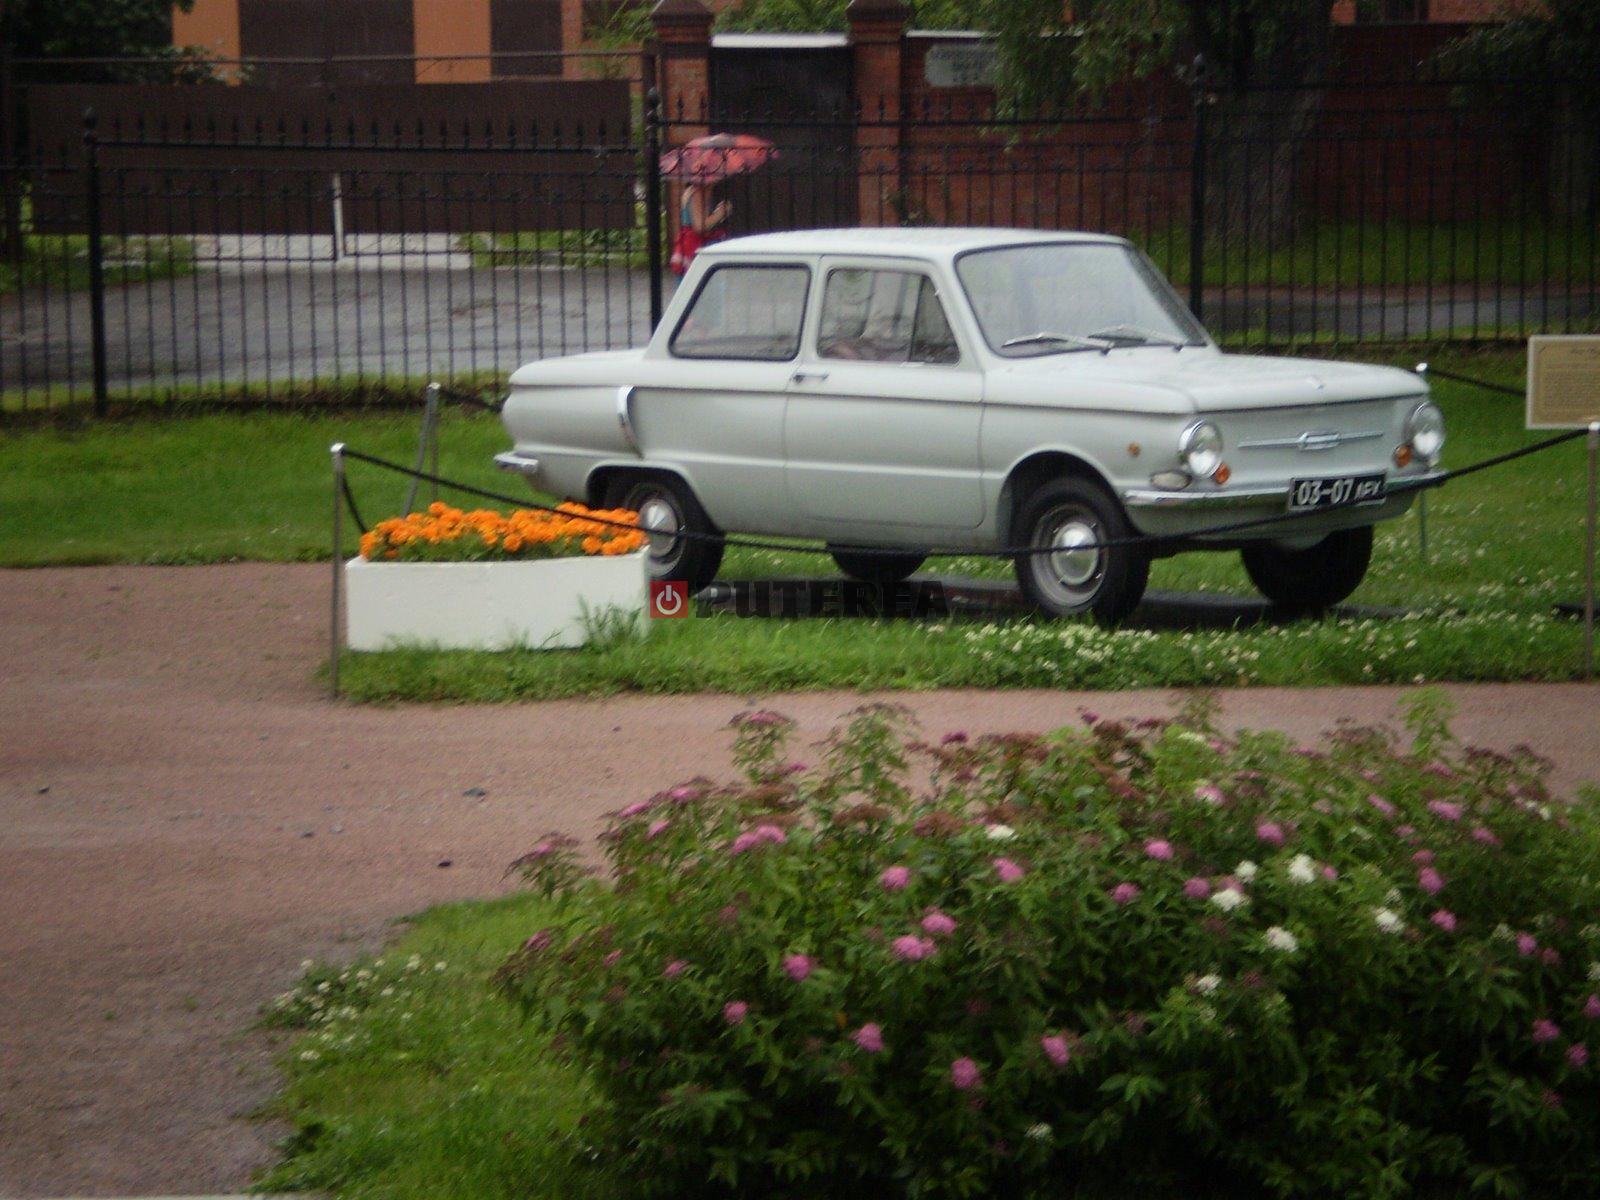 EXCLUSIV Aceasta este prima mașină a lui Vladimir Putin: o Zaporozhets ZAZ 968, fabricată în Ucraina